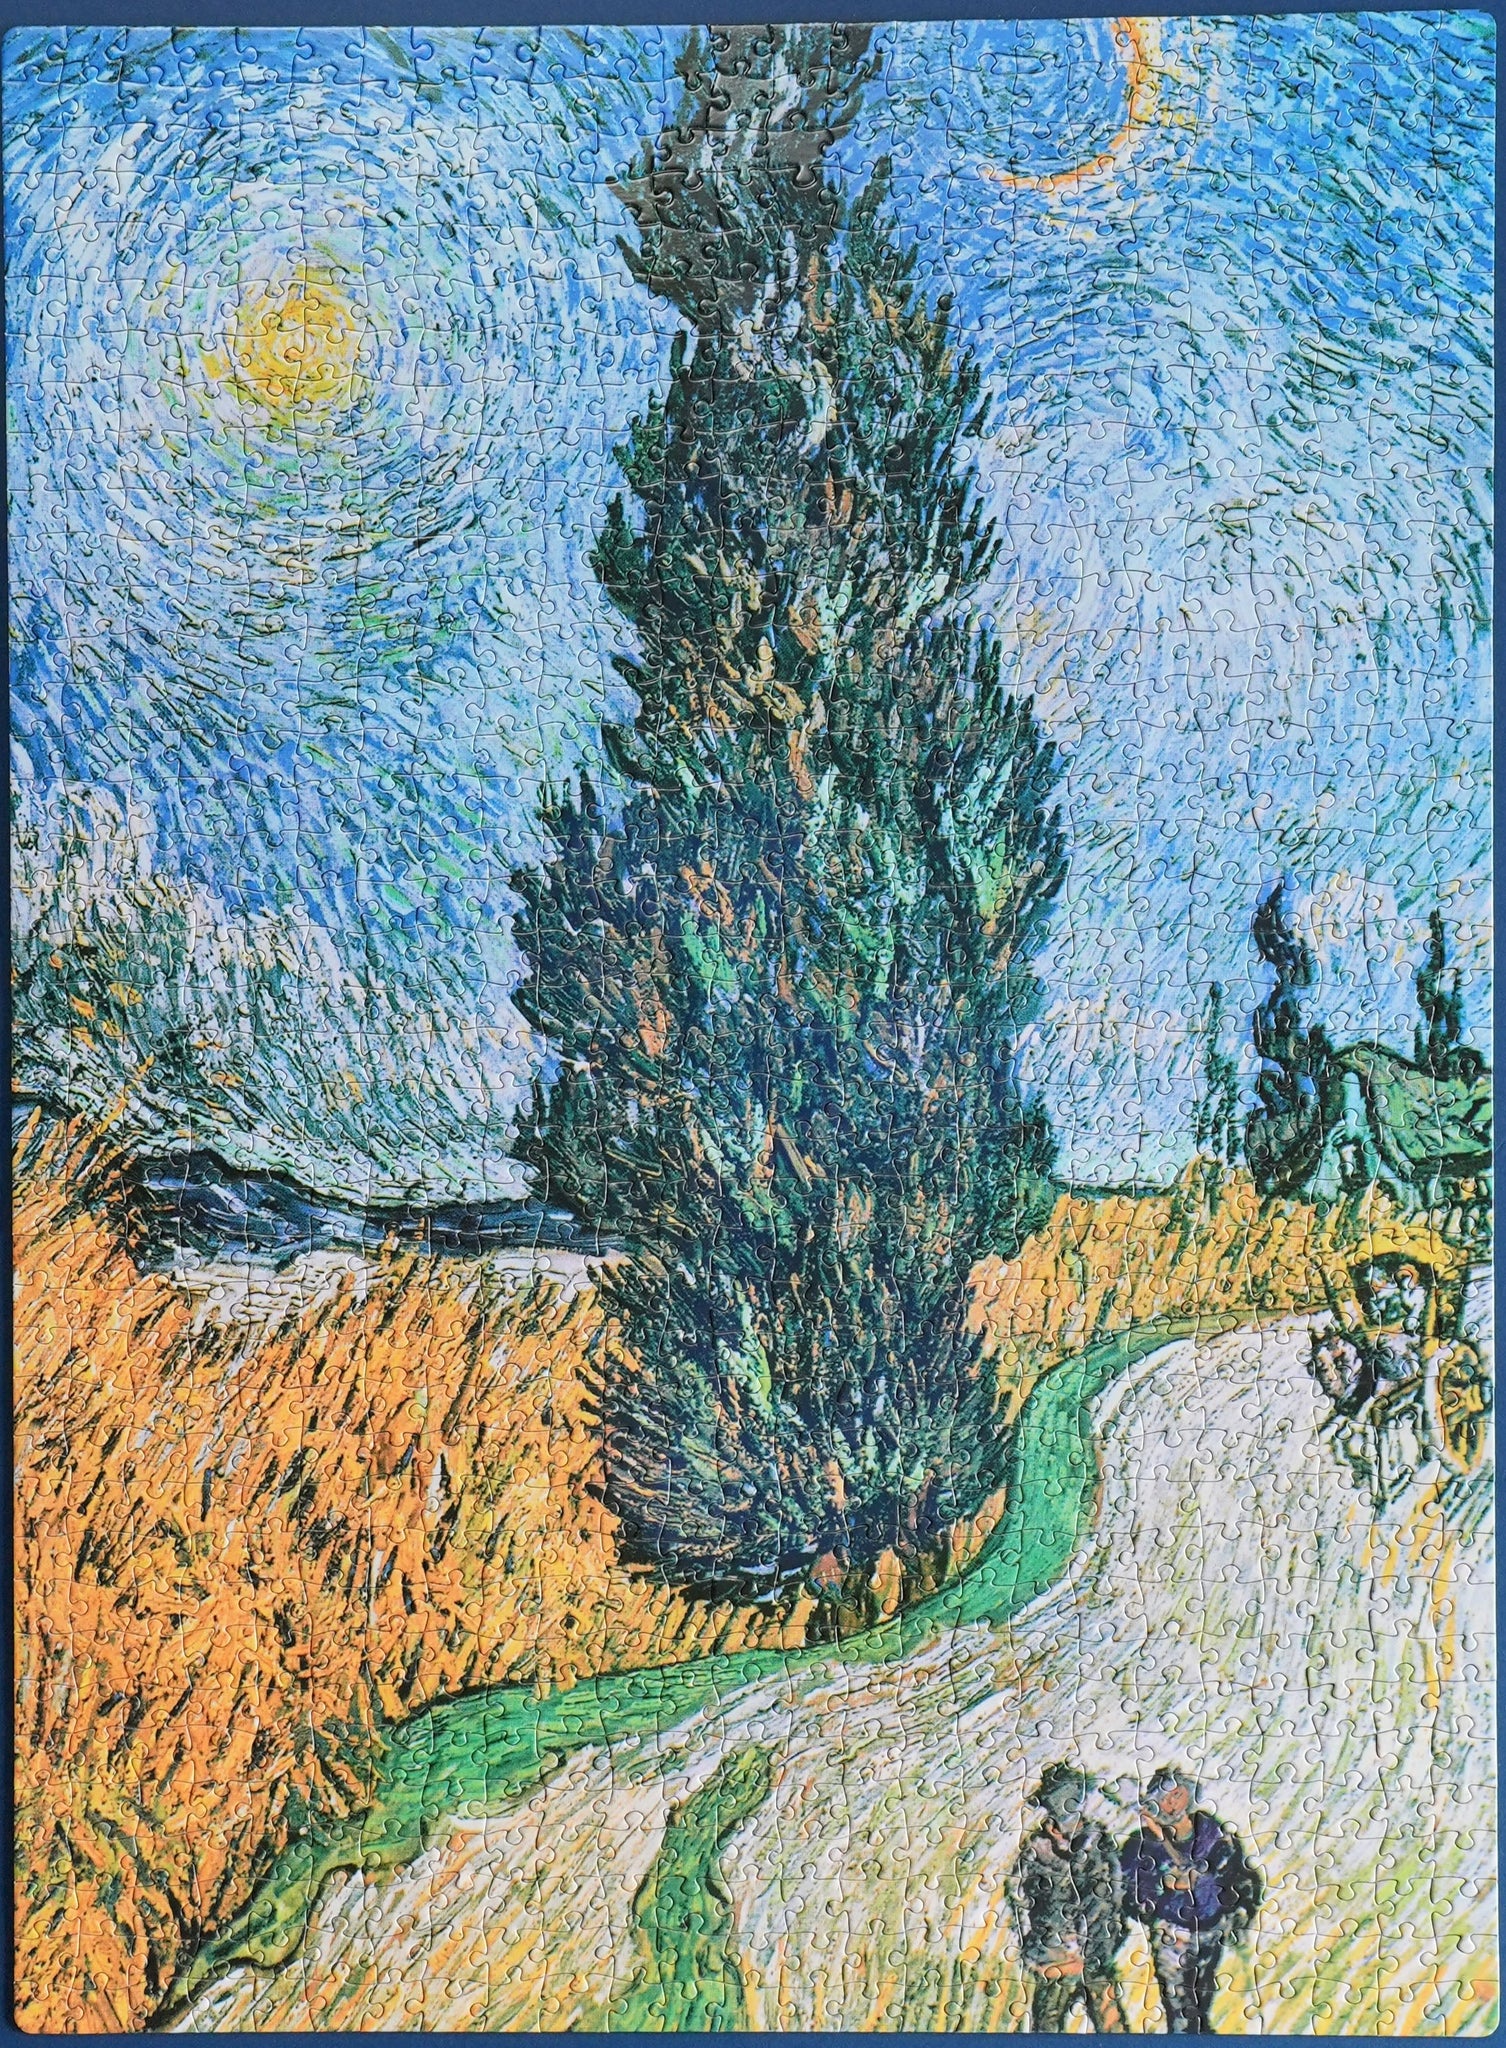 Quebra-Cabeça Van Gogh (1000 peças) - PAPERBLANKS